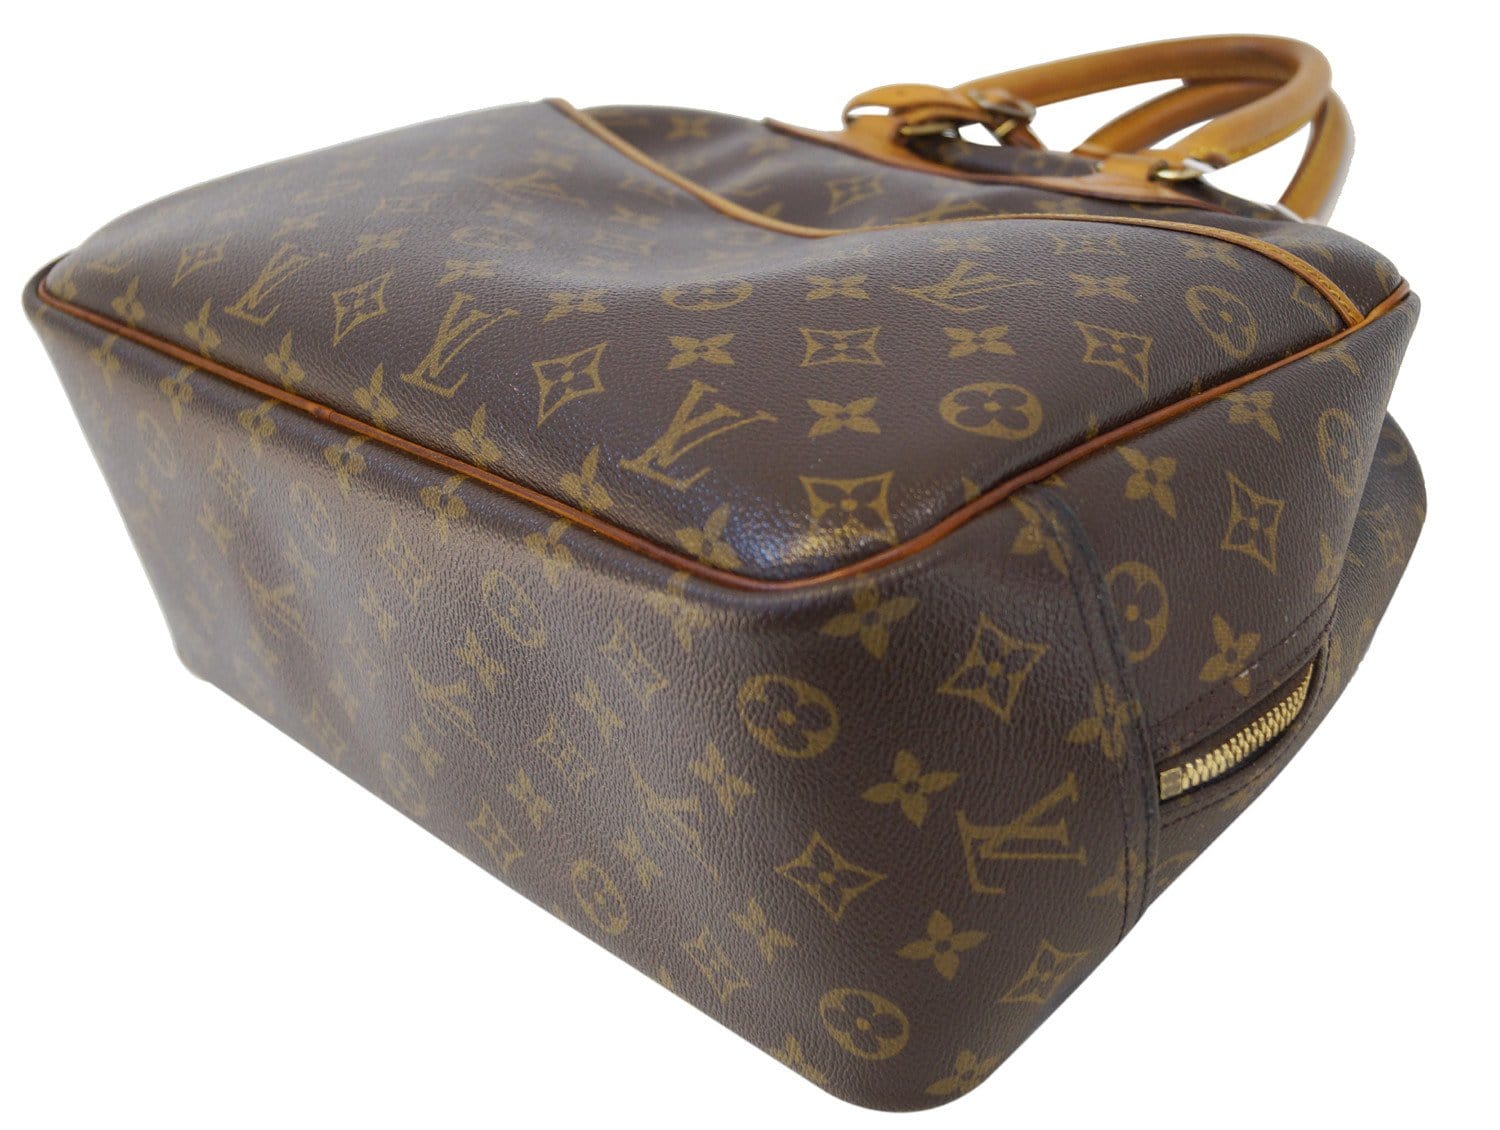 Vintage Louis Vuitton Deauville handbag